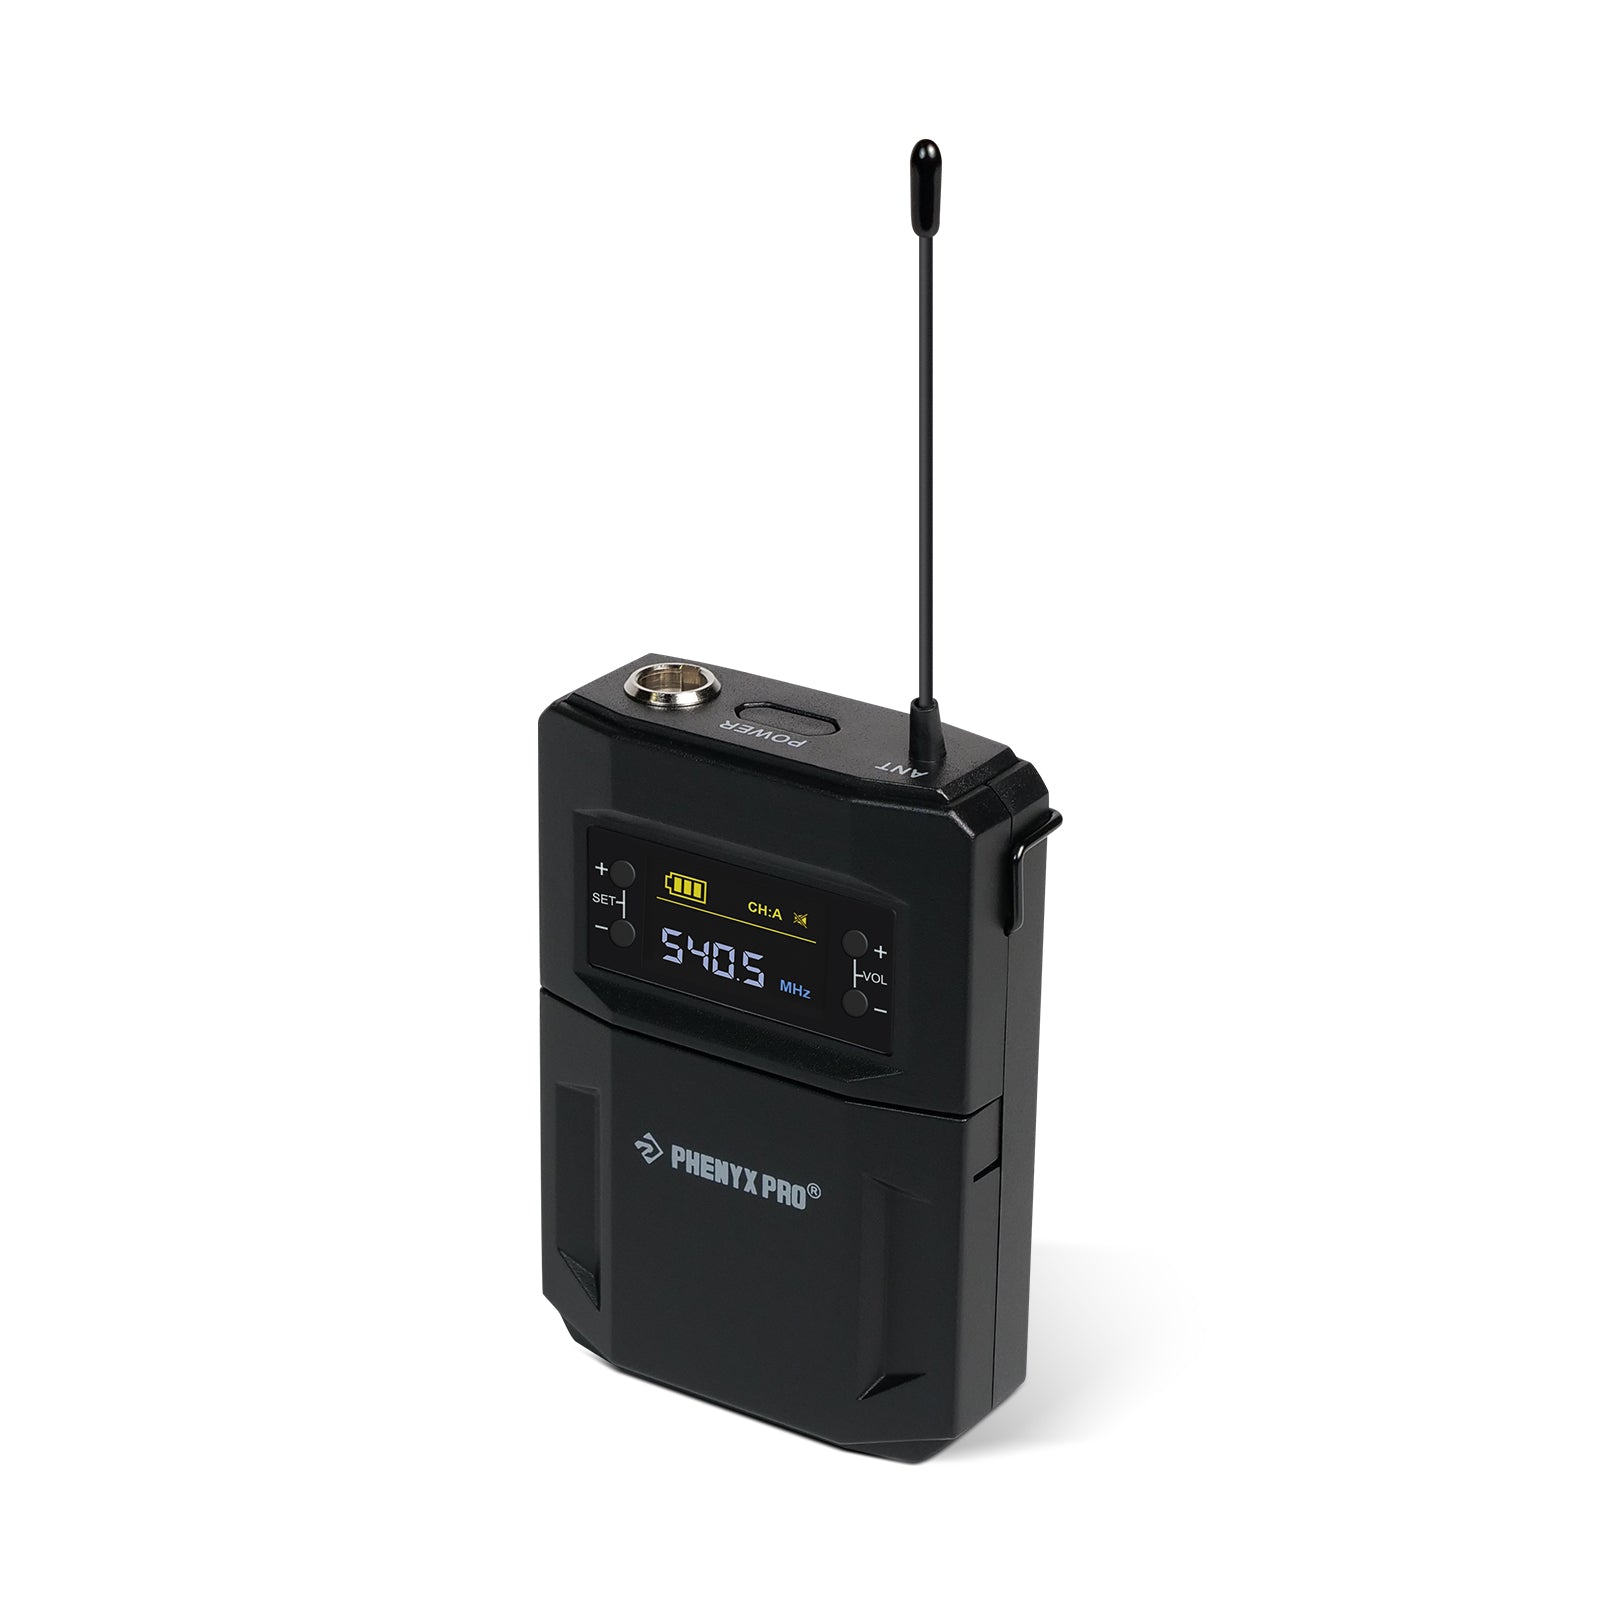 PTU-5200-2H2B | Sistema de micrófono inalámbrico cuádruple con salto de frecuencia